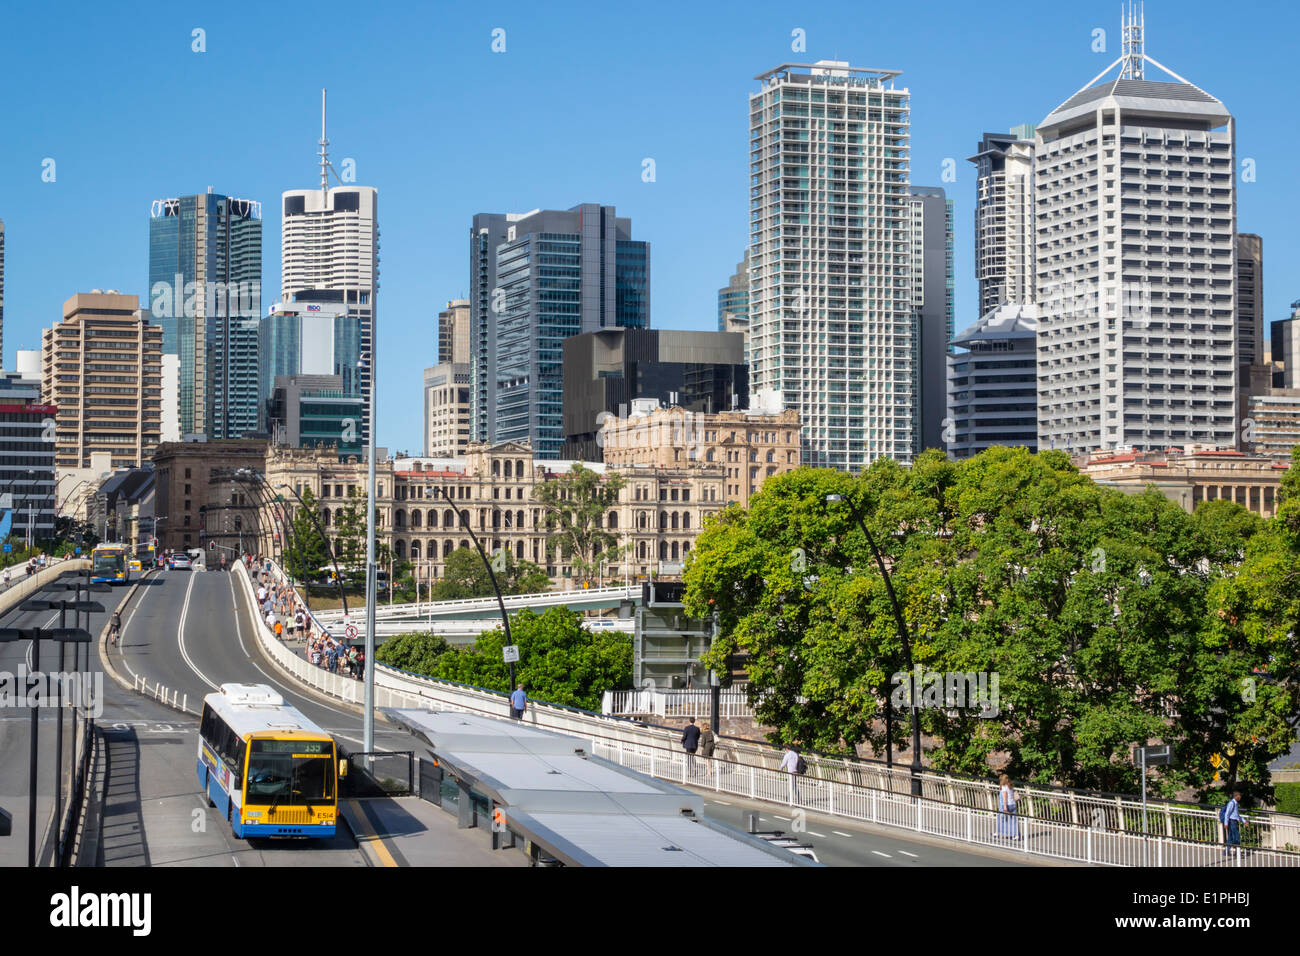 Brisbane Australien CBD, Victoria Bridge, Kulturzentrum, Zentrum, Busbahnhof, Skyline der Stadt, Wolkenkratzer, Gebäude, AU140314090 Stockfoto